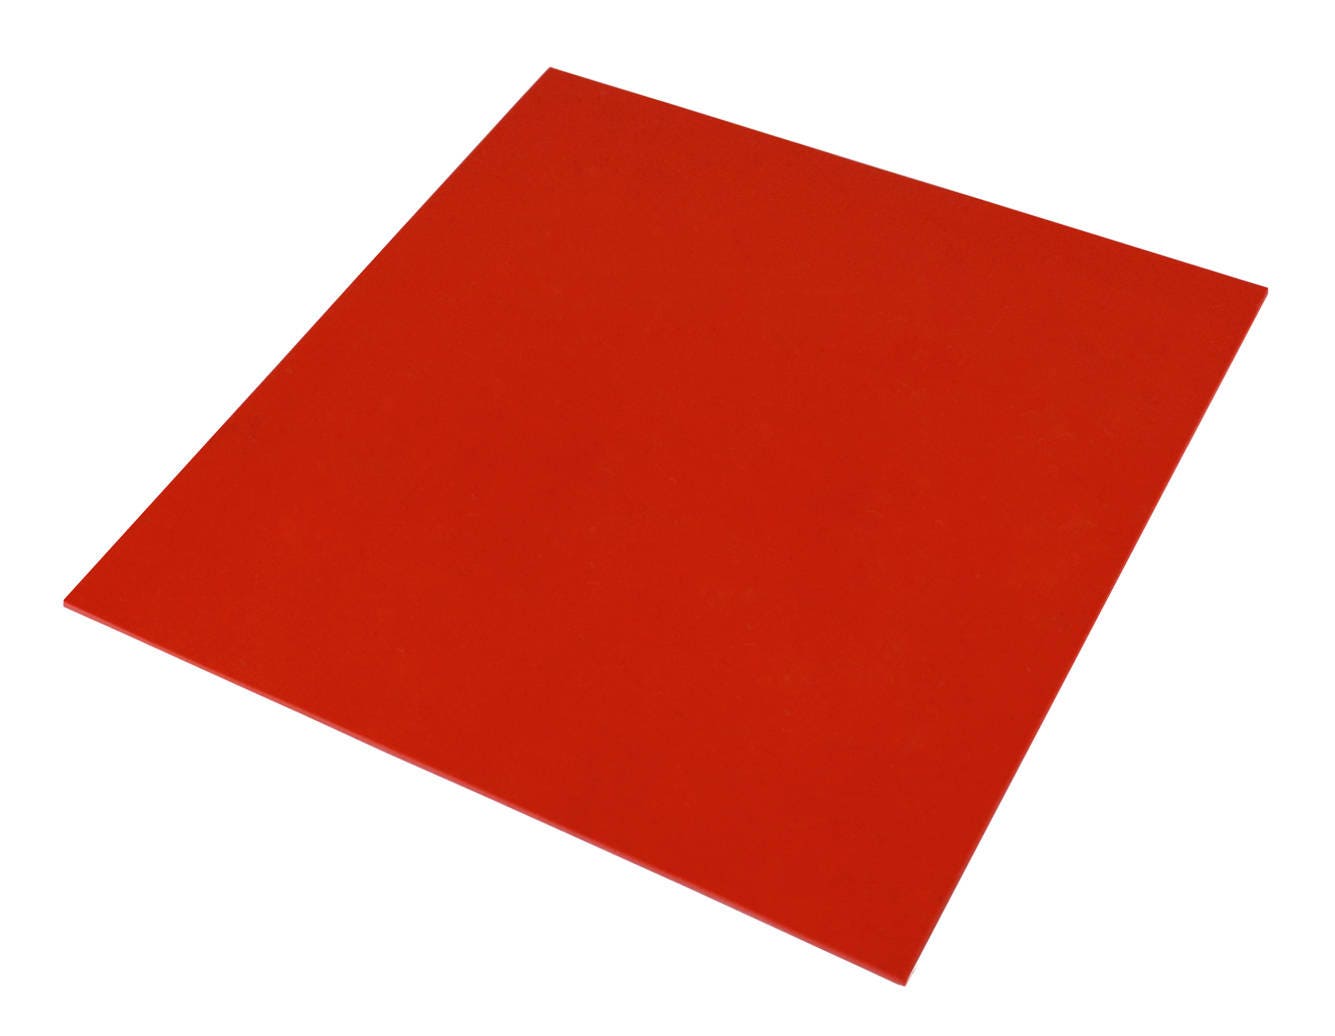 Красный точность. Оргстекло красный 3мм RAL 3020. Plexiglas 2,05х3,05 3мм красный 3n570 XT. Оргстекло цветное (3мм, 2,05 х 3,05м, синий, ACRYMA). Plexiglas GS Red 3c02.